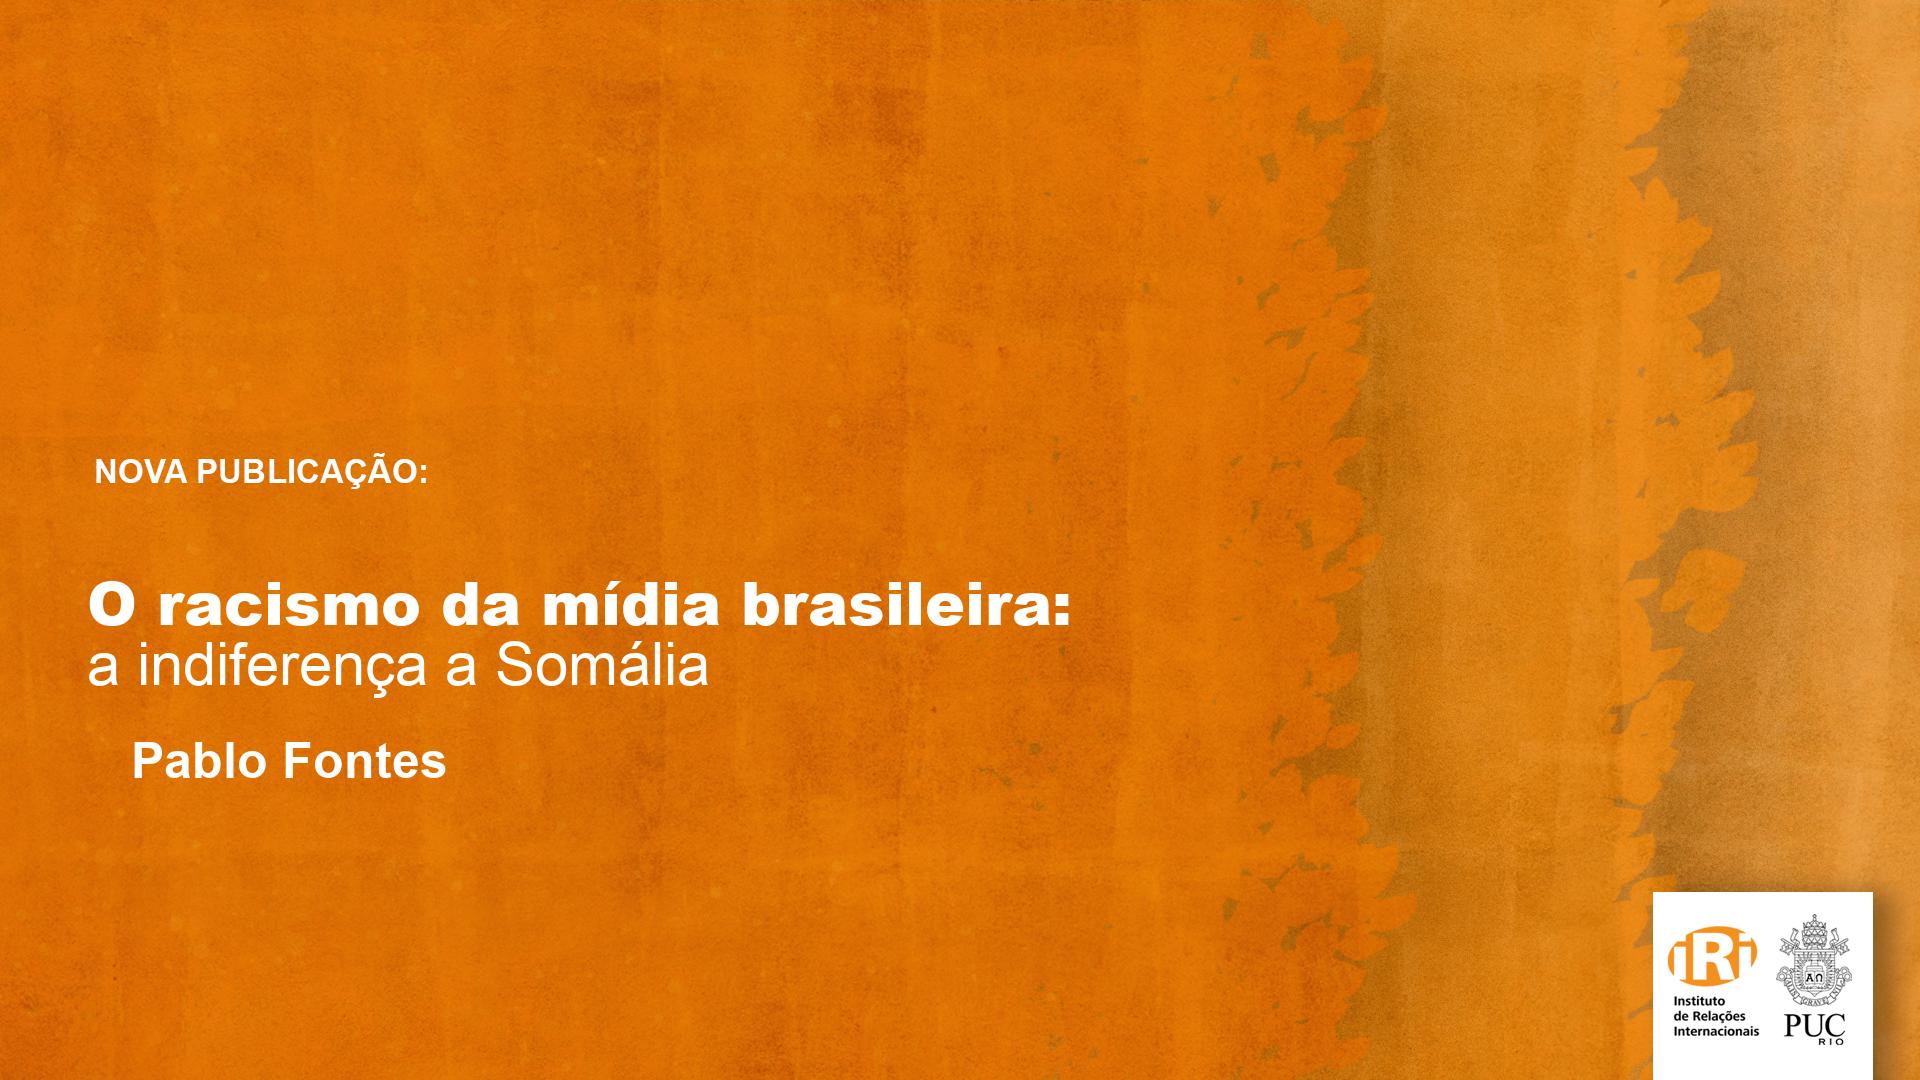 O racismo da mídia brasileira: a indiferença a Somália